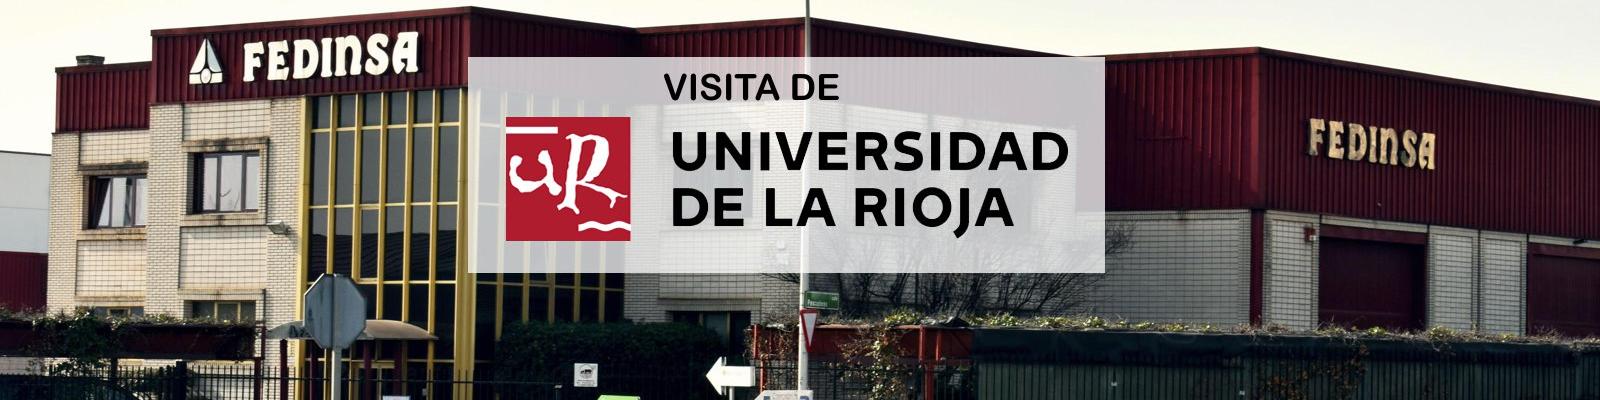 Visita de La Universidad de La Rioja